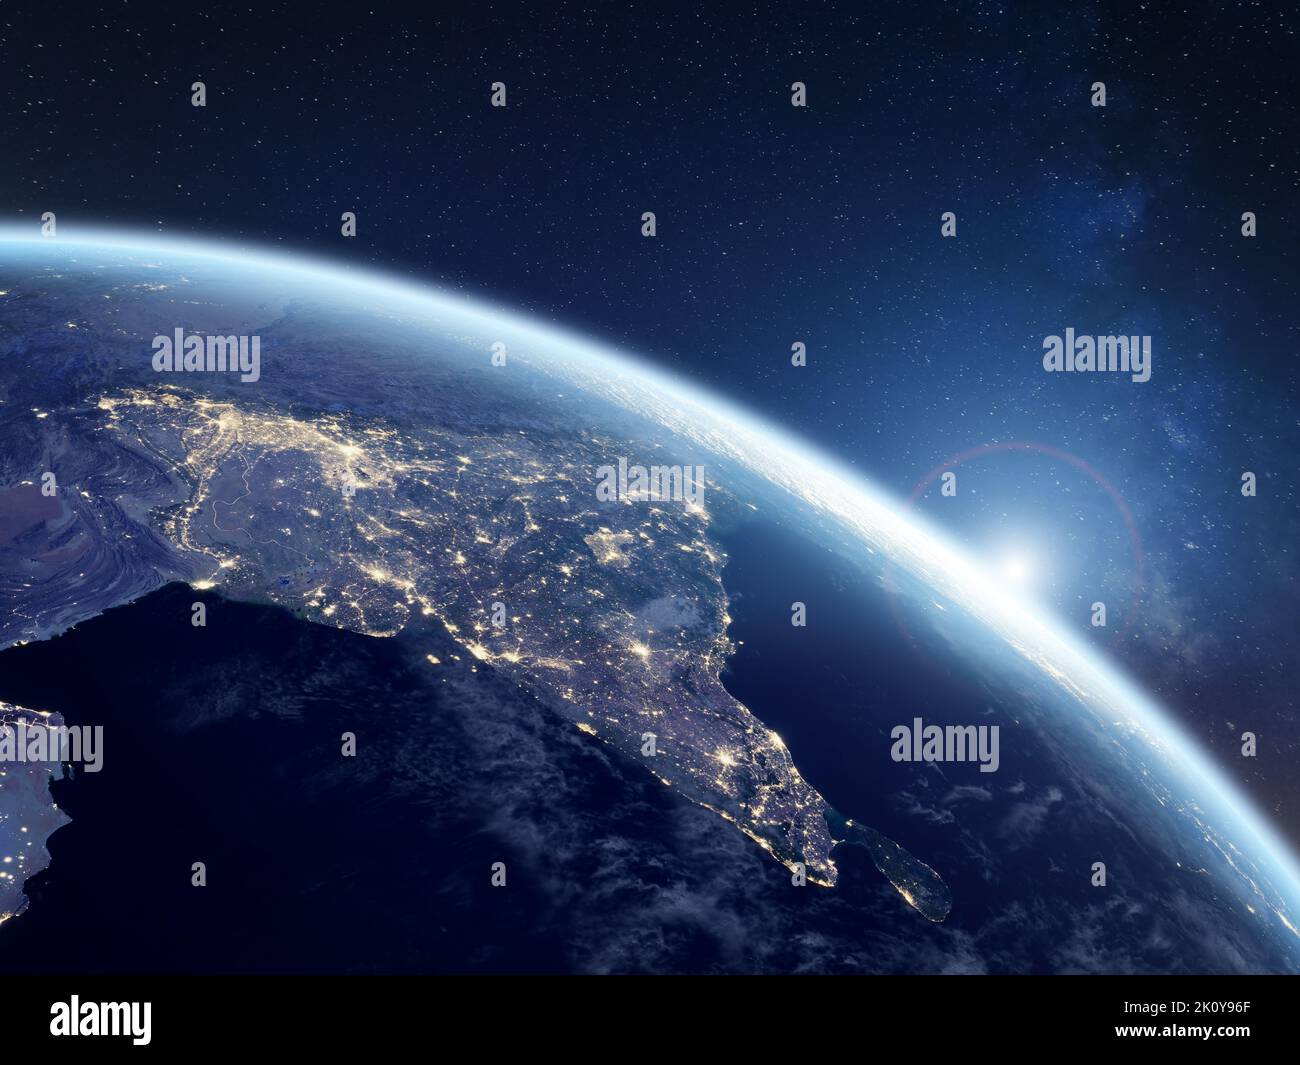 L'Inde de nuit vue de l'espace avec des lumières de la ville montrant l'activité dans les villes indiennes, Delhi, Mumbai, Bengalore. 3D rendu de la planète Terre. Éléments fro Banque D'Images